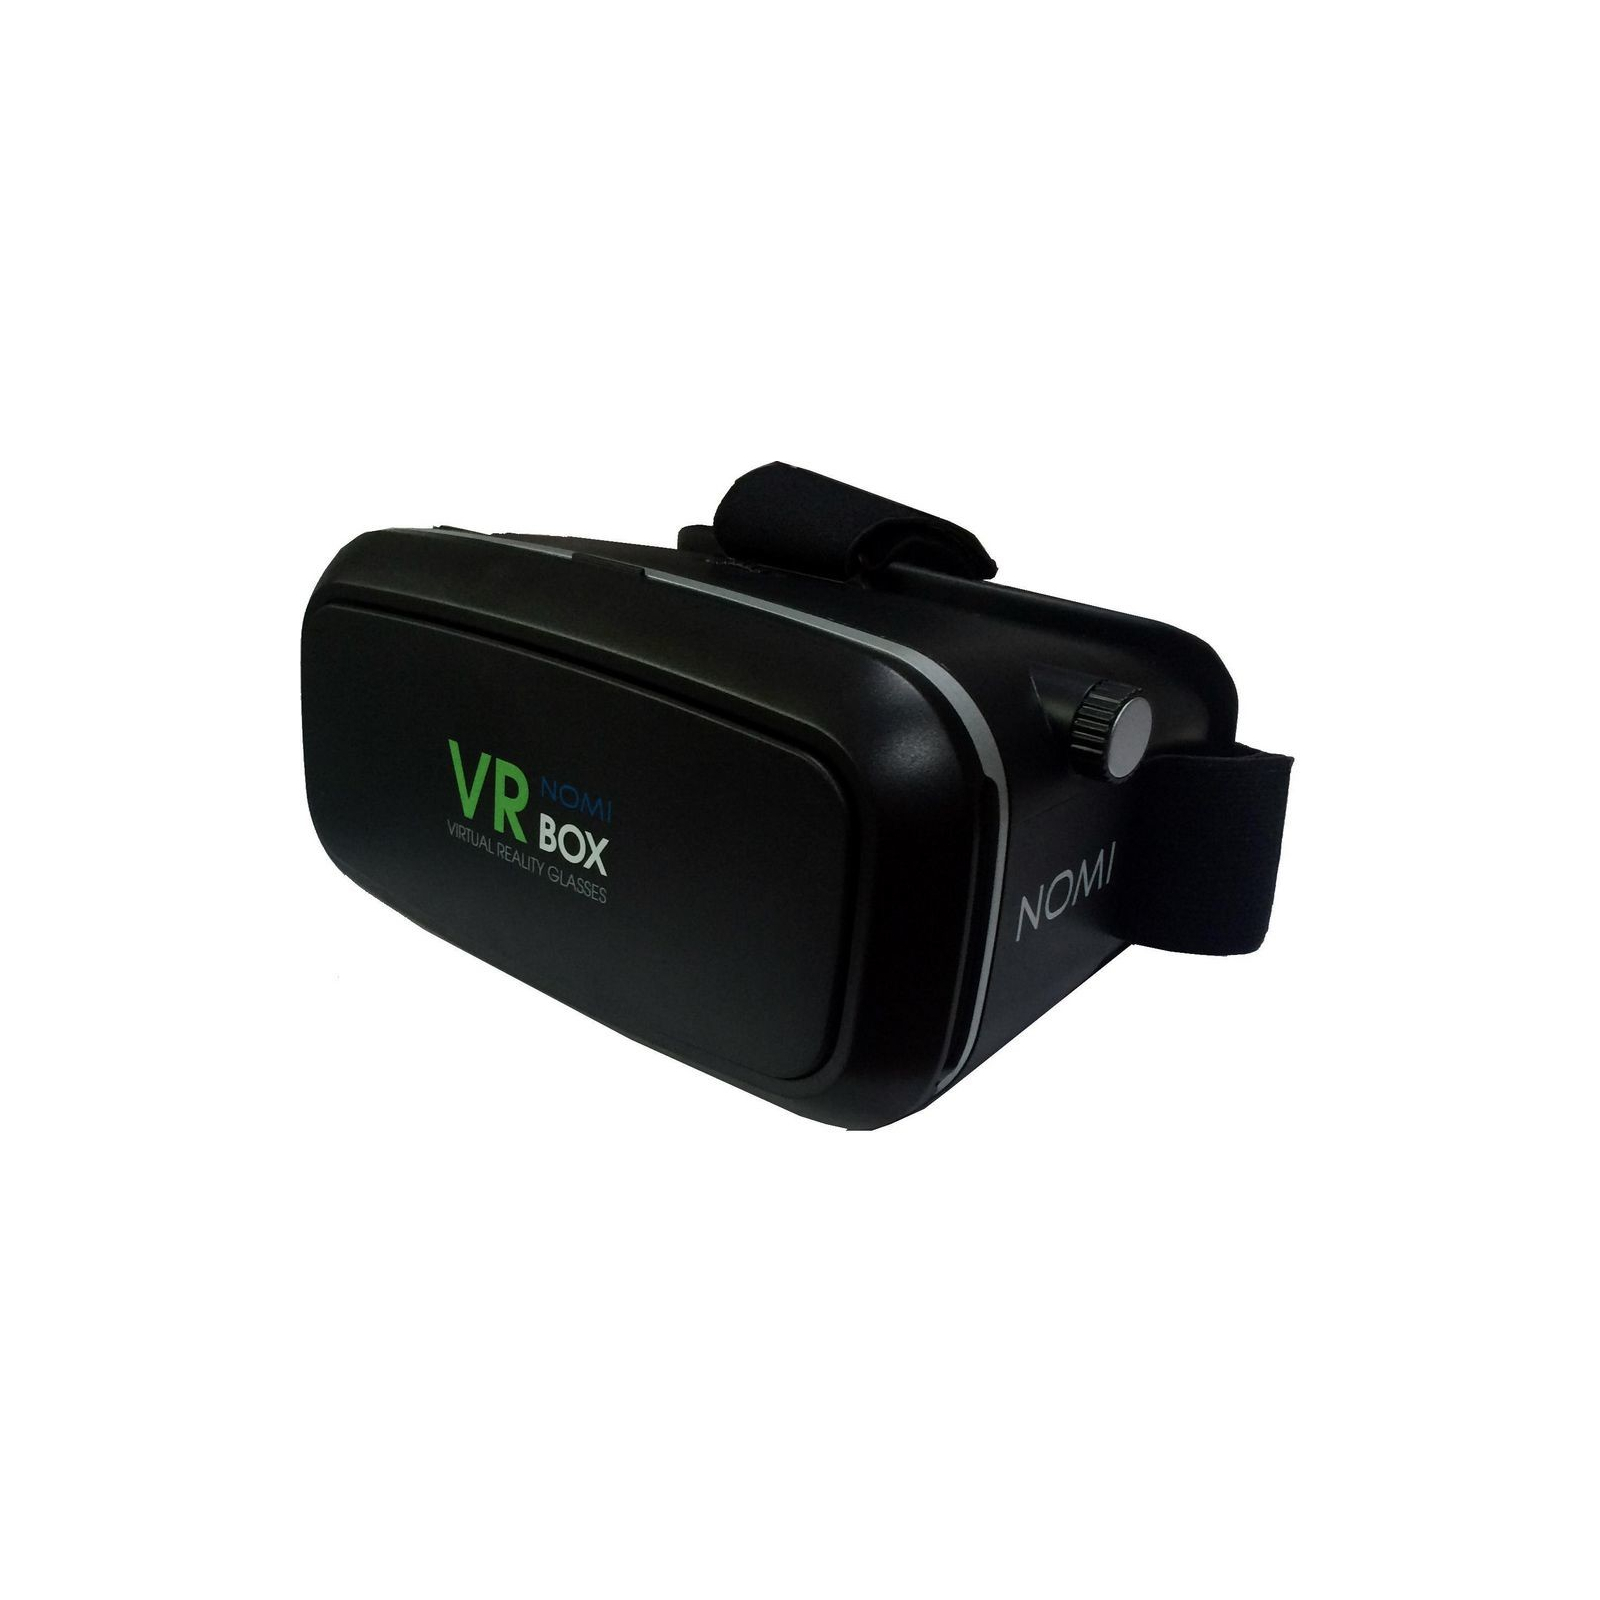 Очки виртуальной реальности Nomi VR Box (207207)